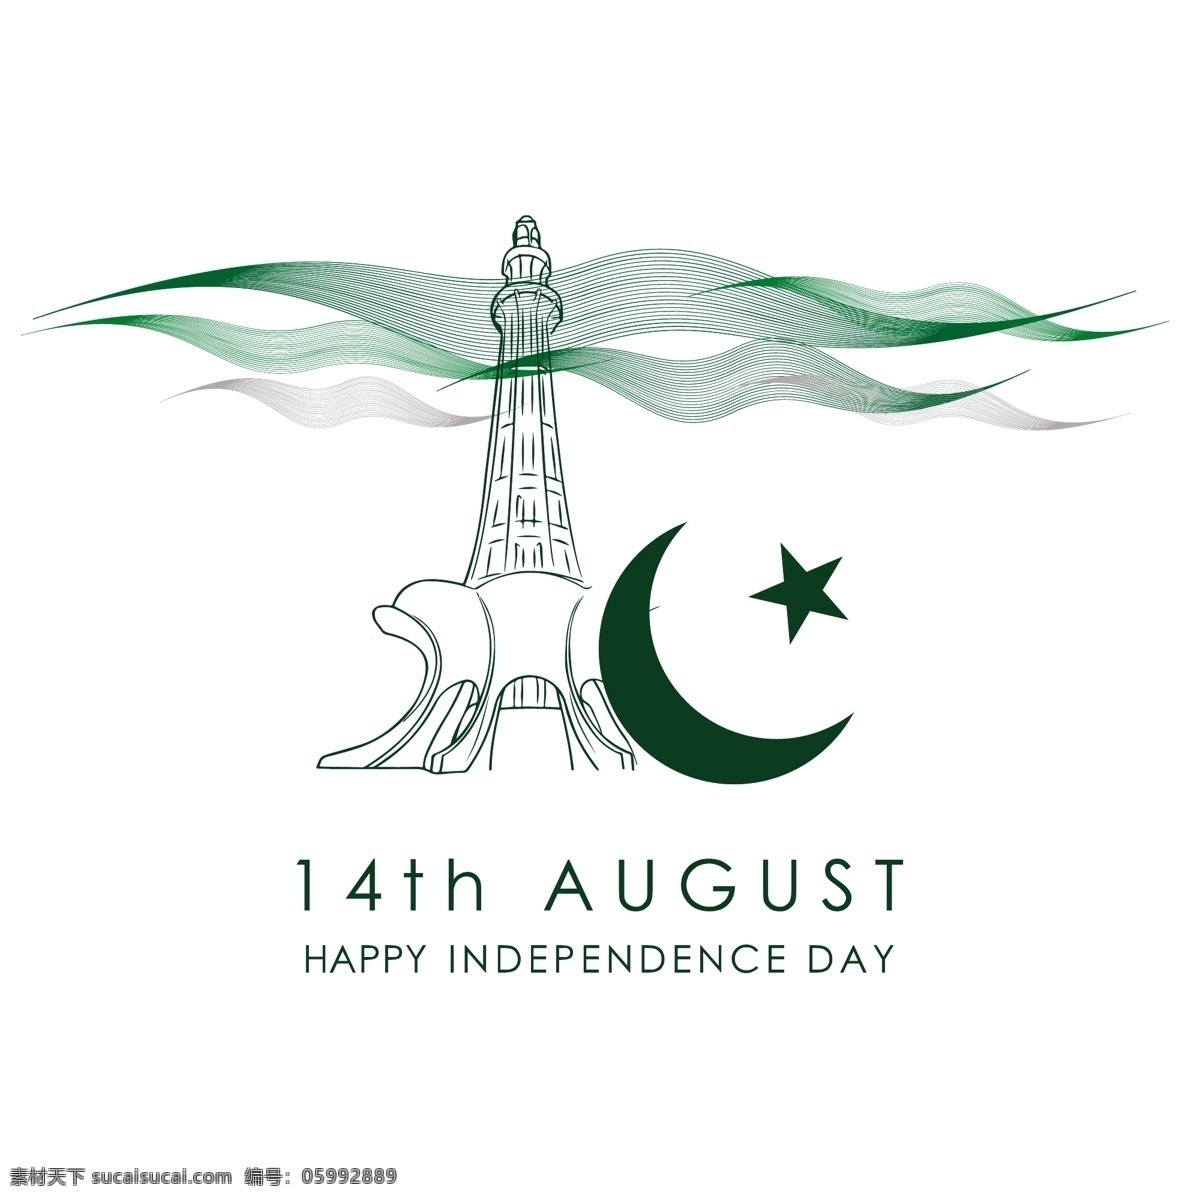 巴基斯坦 独立日 庆典 卡 背景 旗帜 宣传单 摘要 旅游 明星 卡片 徽章 绿色 模板 快乐 色彩 艺术 月亮 文字 节日 白色